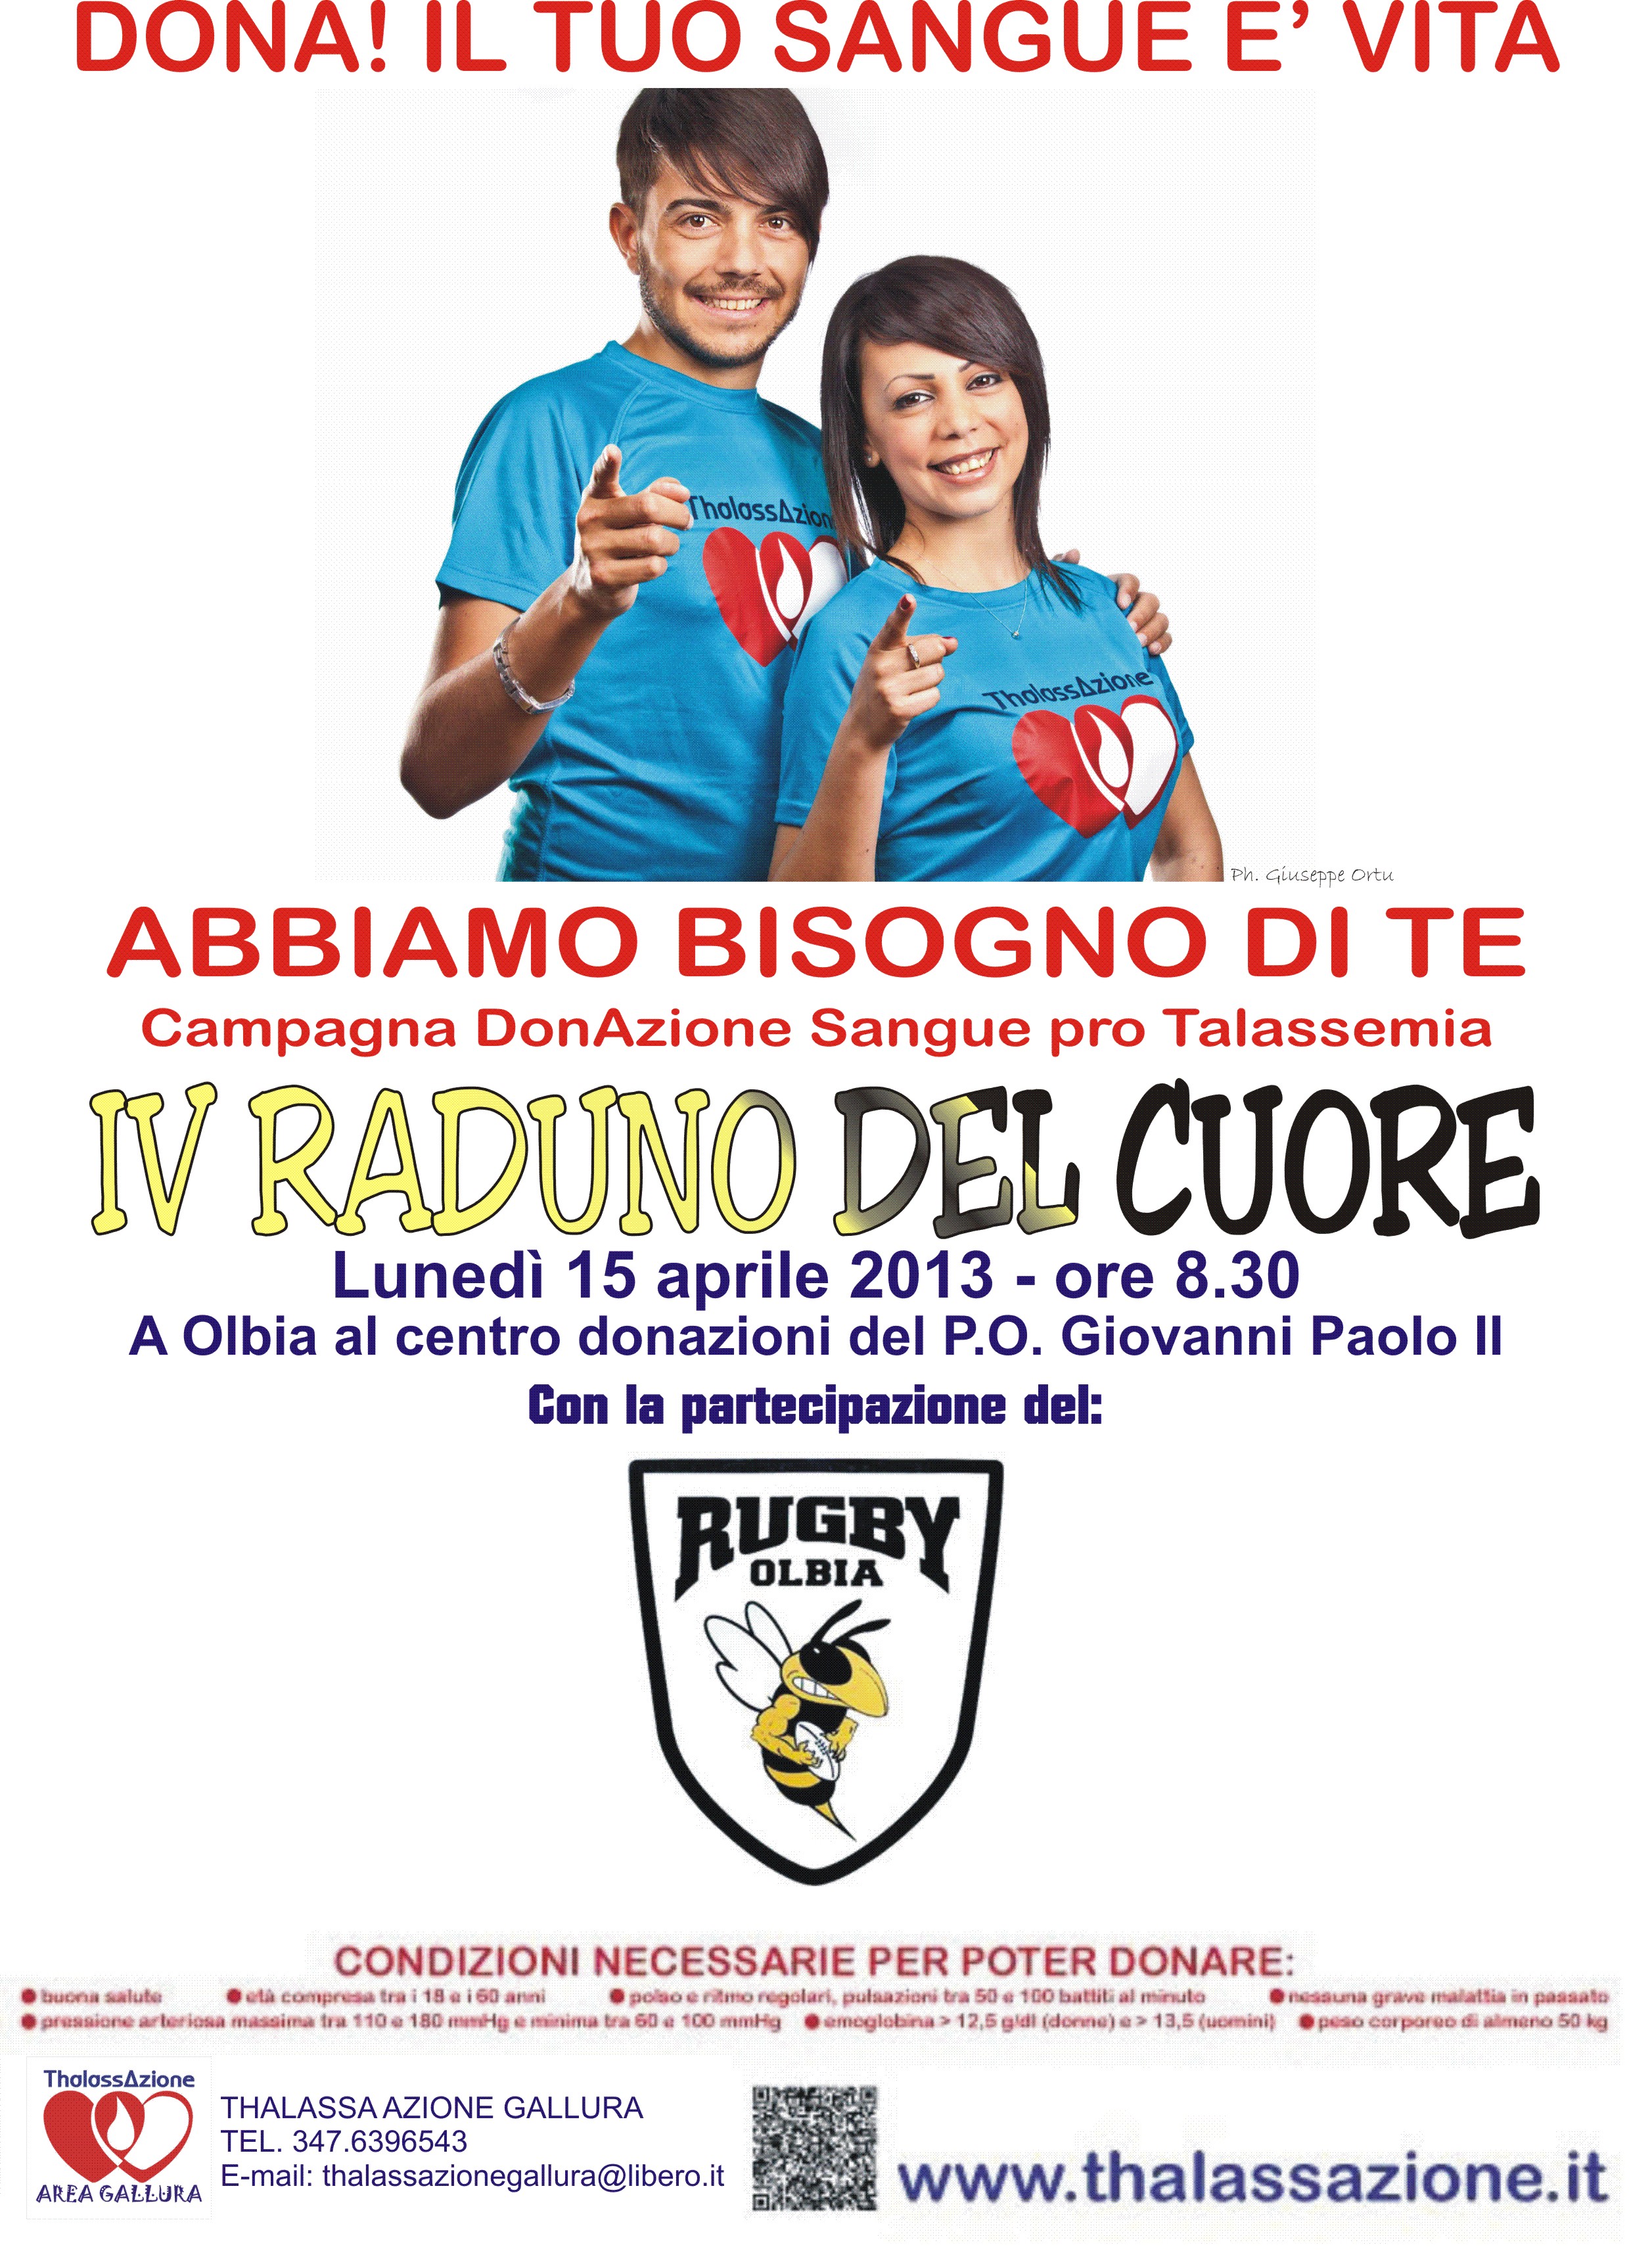 IV Raduno del Cuore: nuovo appuntamento solidale a Olbia con gli atleti del Rugby Olbia